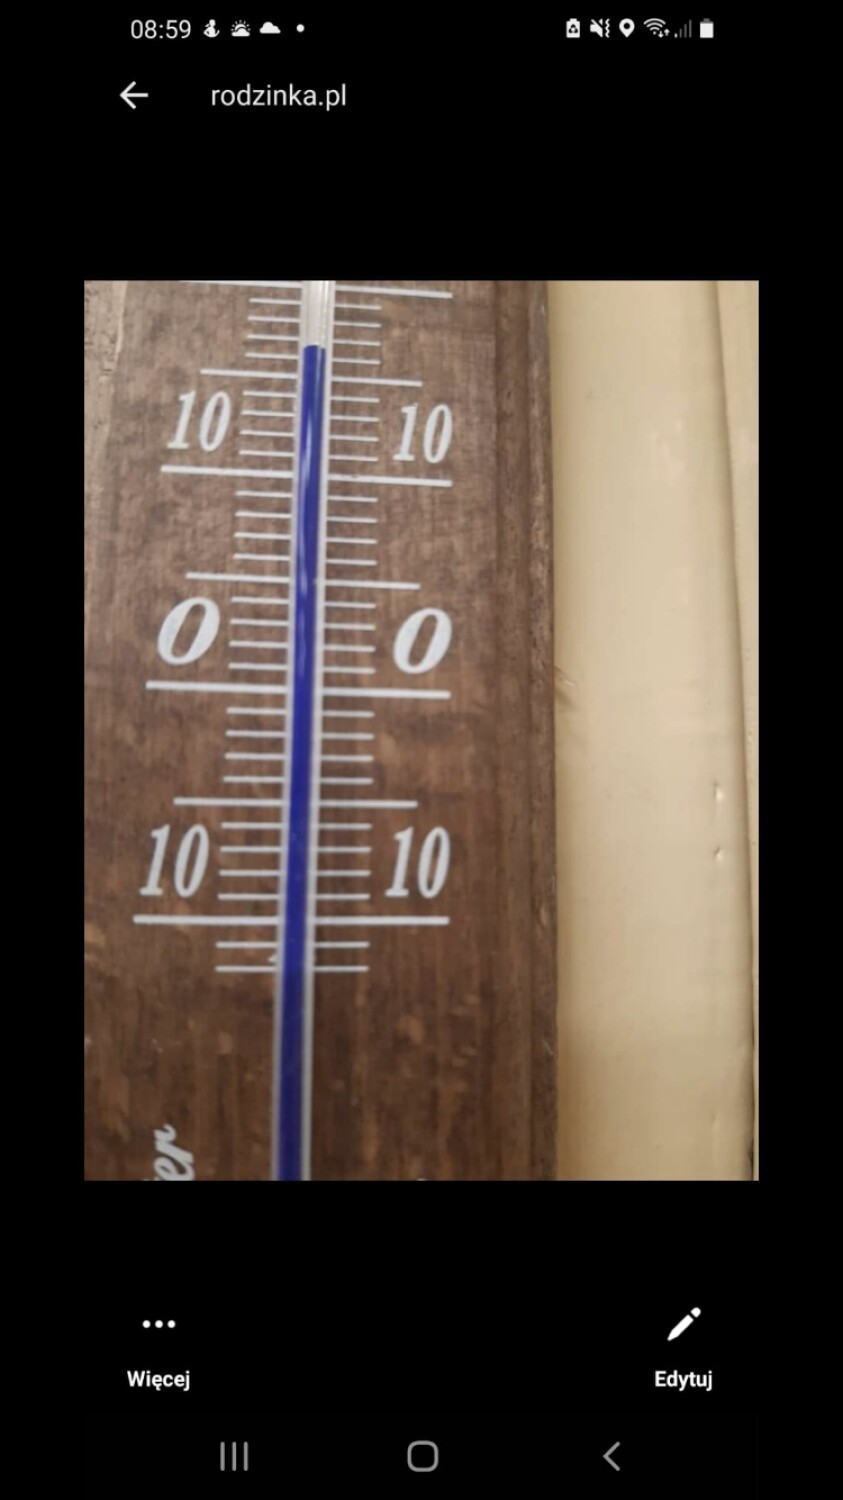 Termometr w jednej z sal, wskazujący 16 stopni Celsjusza